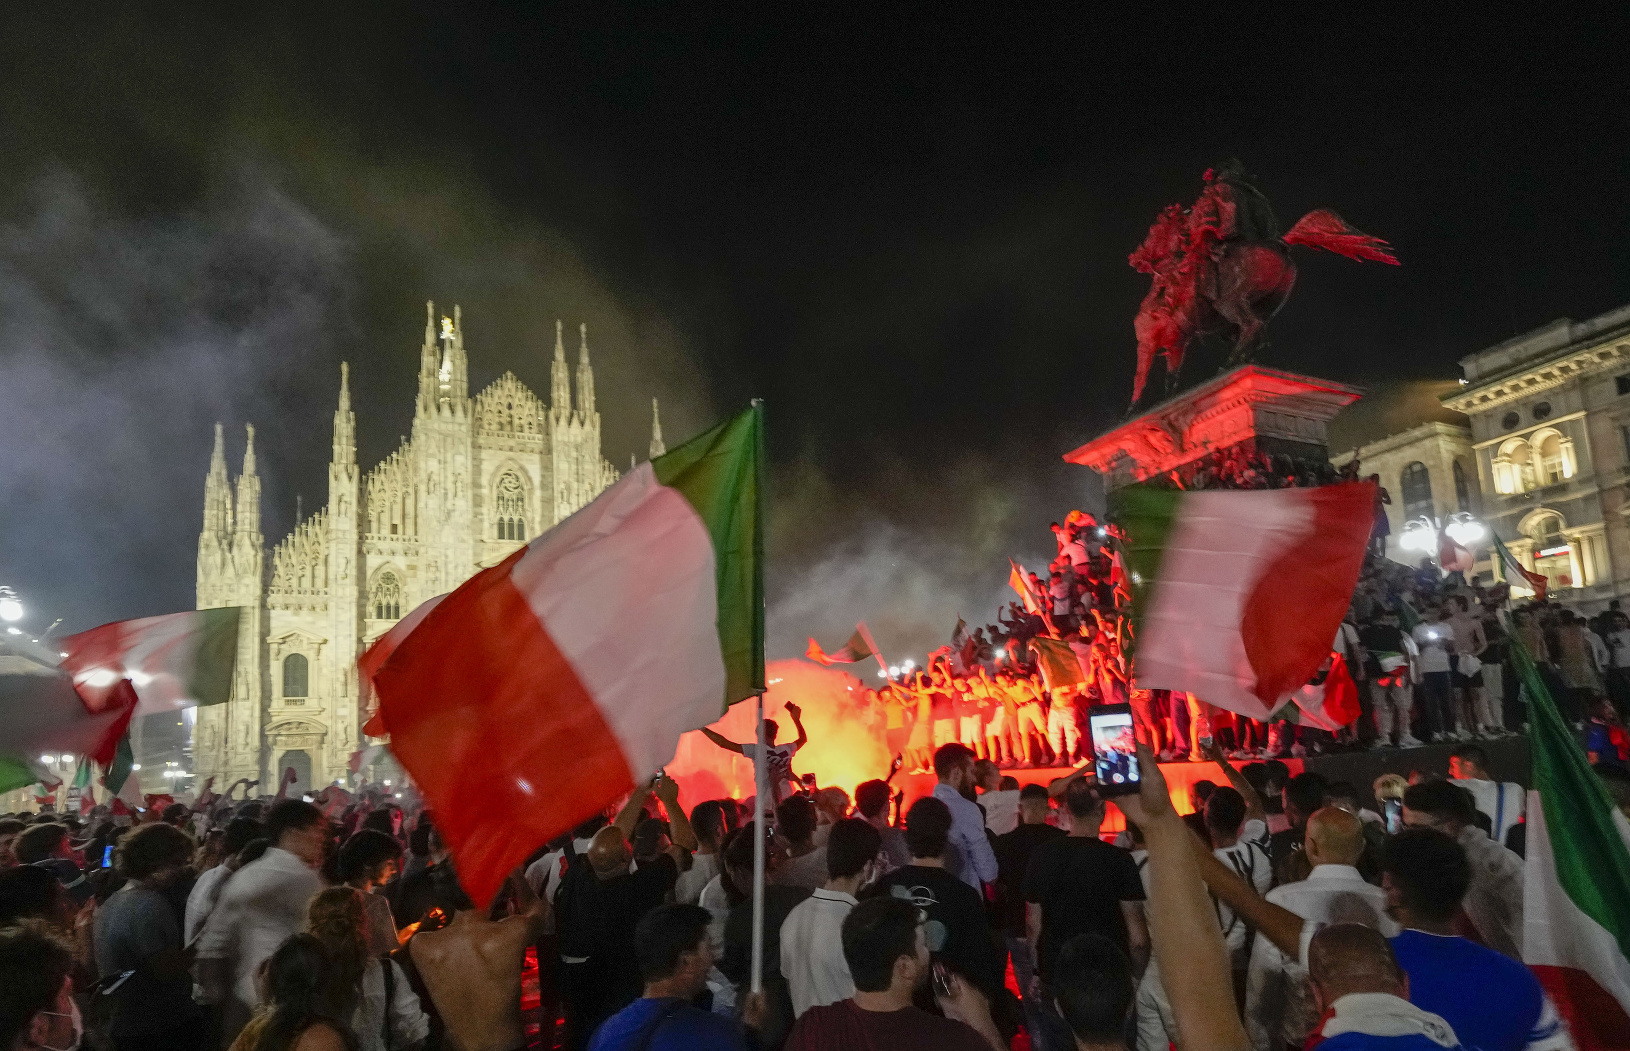 Talianski fanúšikovia oslavujú tirumf